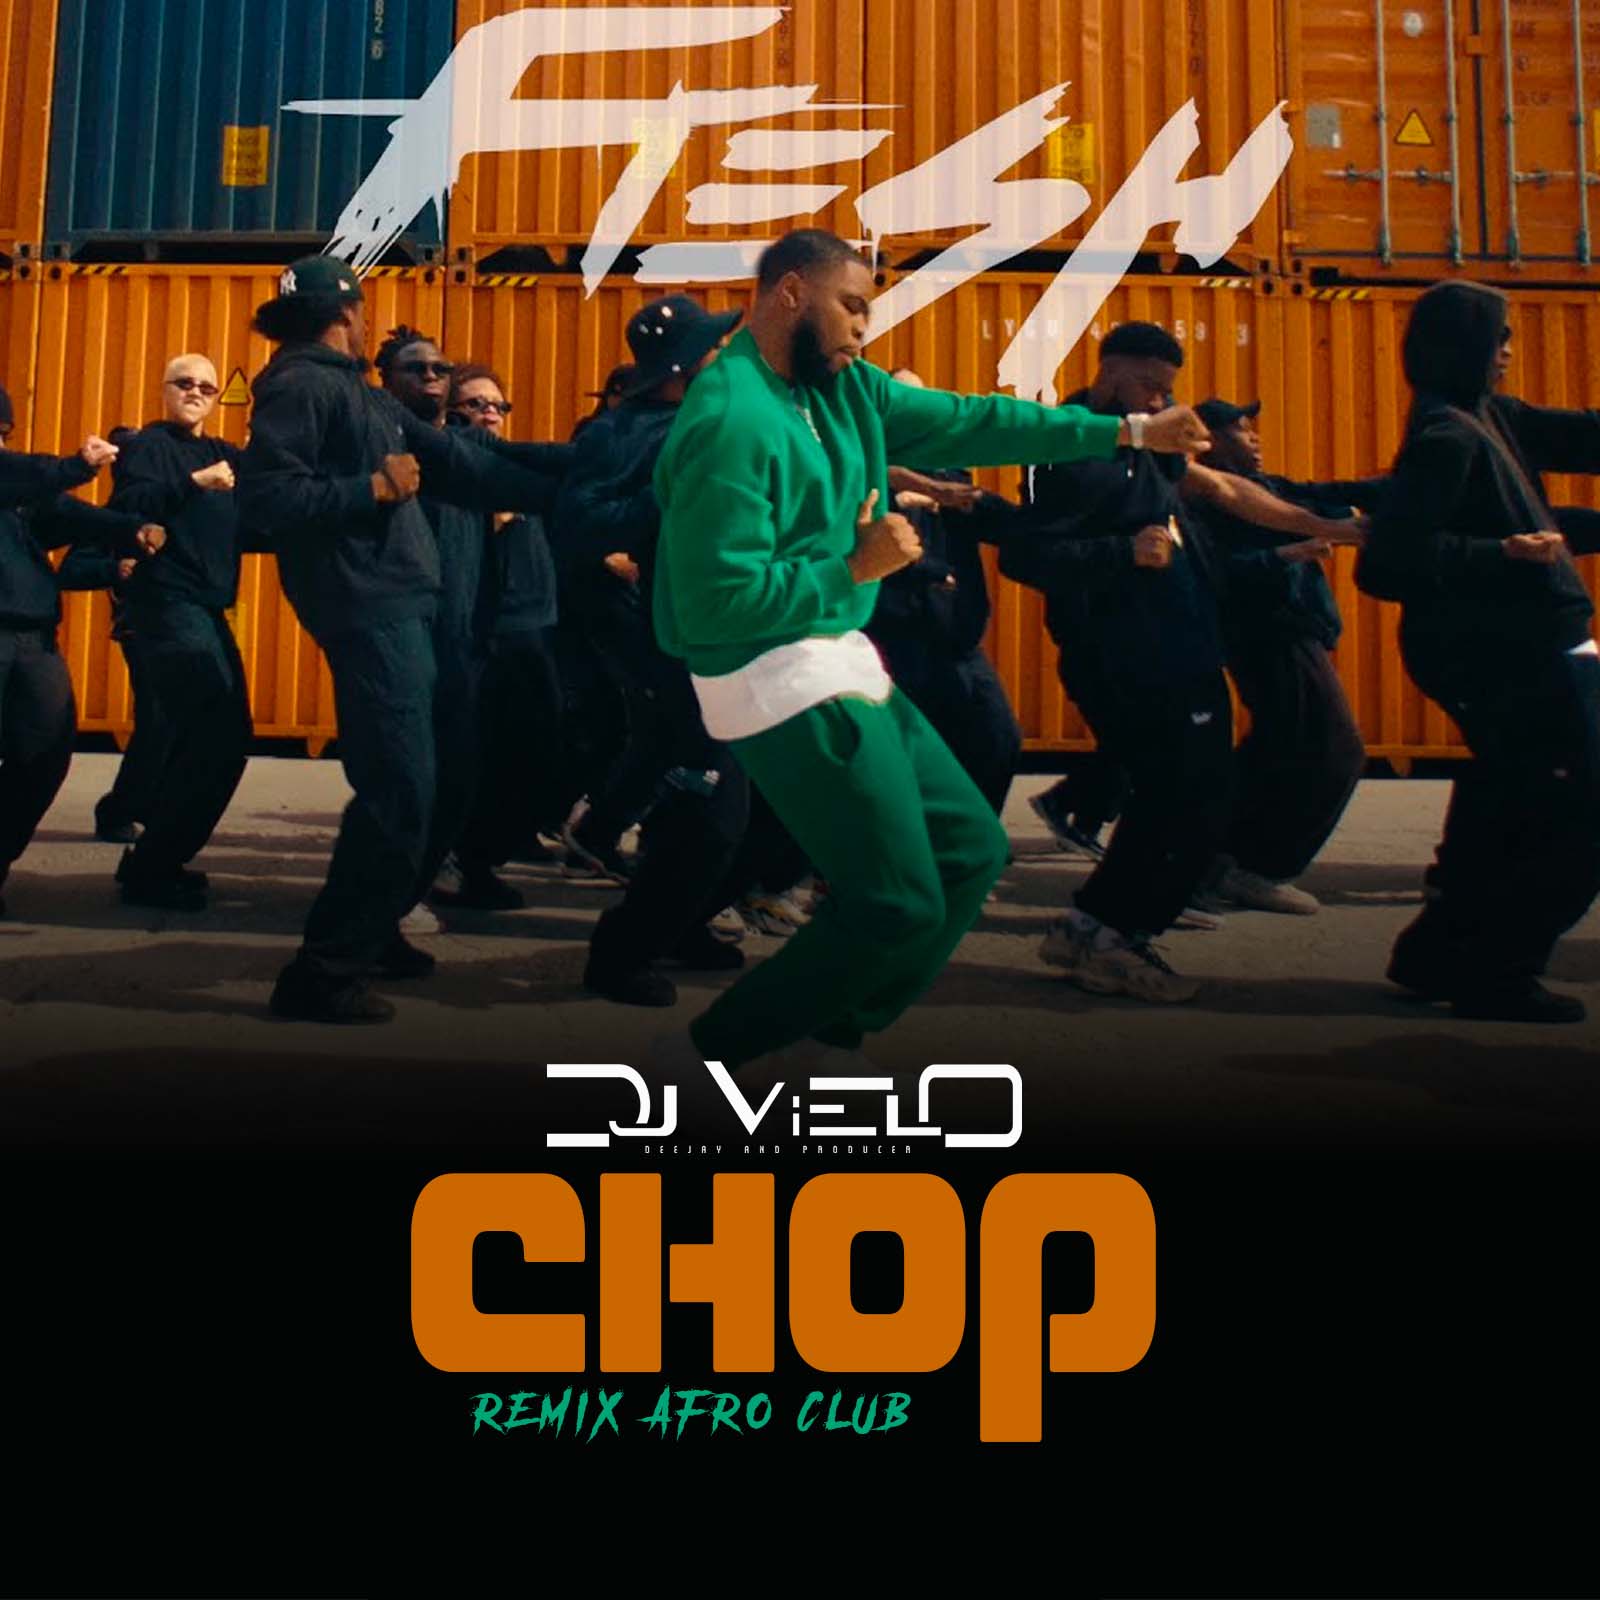 ഡൗൺലോഡ് Dj Vielo X Fresh - Chop Remix Afro Club DISPO SUR SPOTIFY, DEEZER, APPLE MUSIC